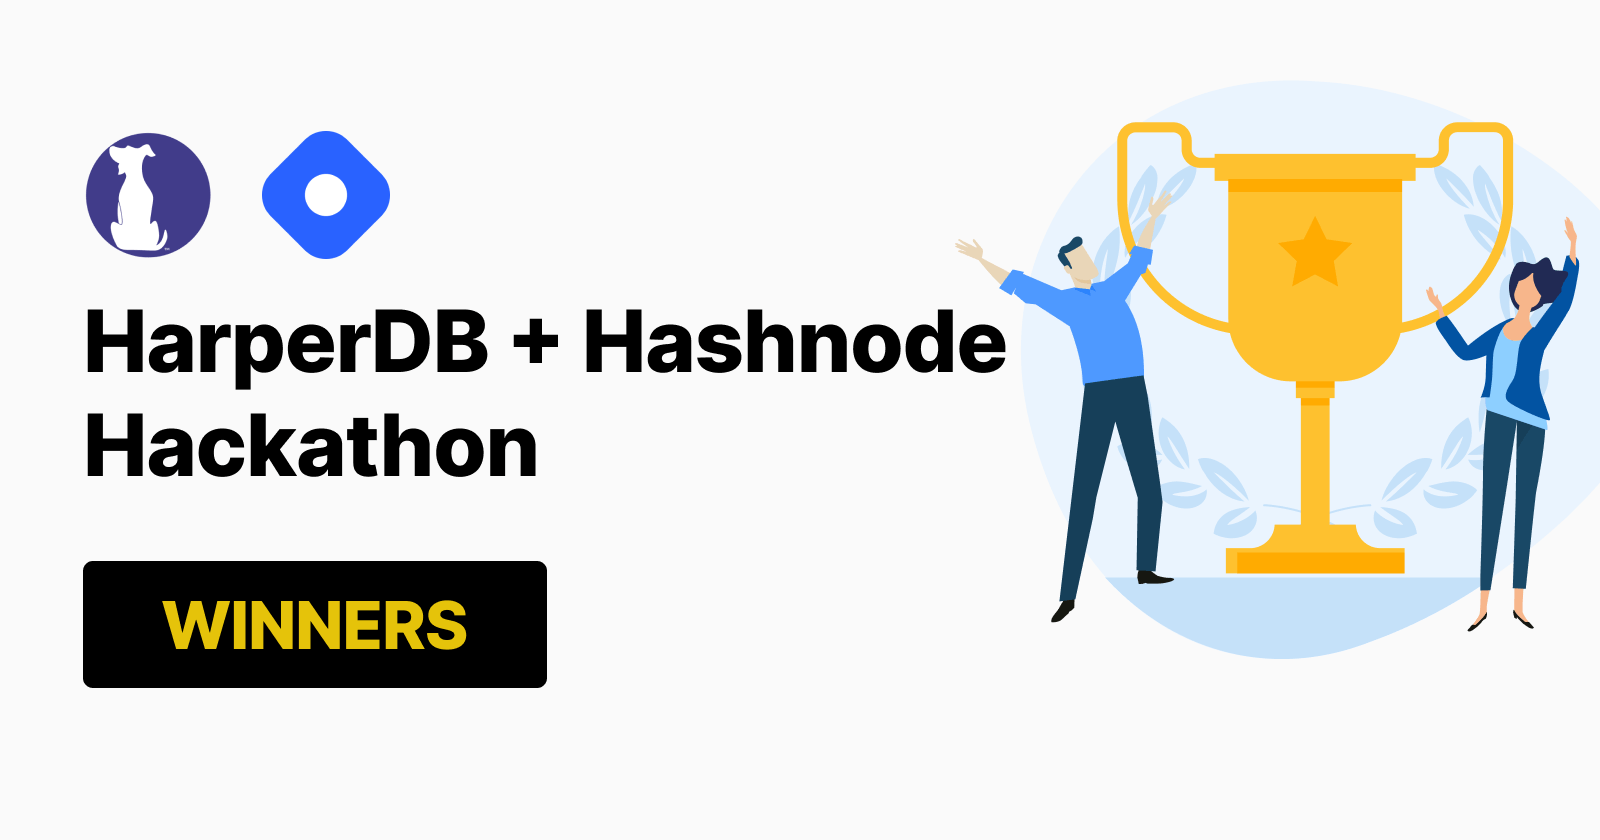 HarperDB + Hashnode hackathon